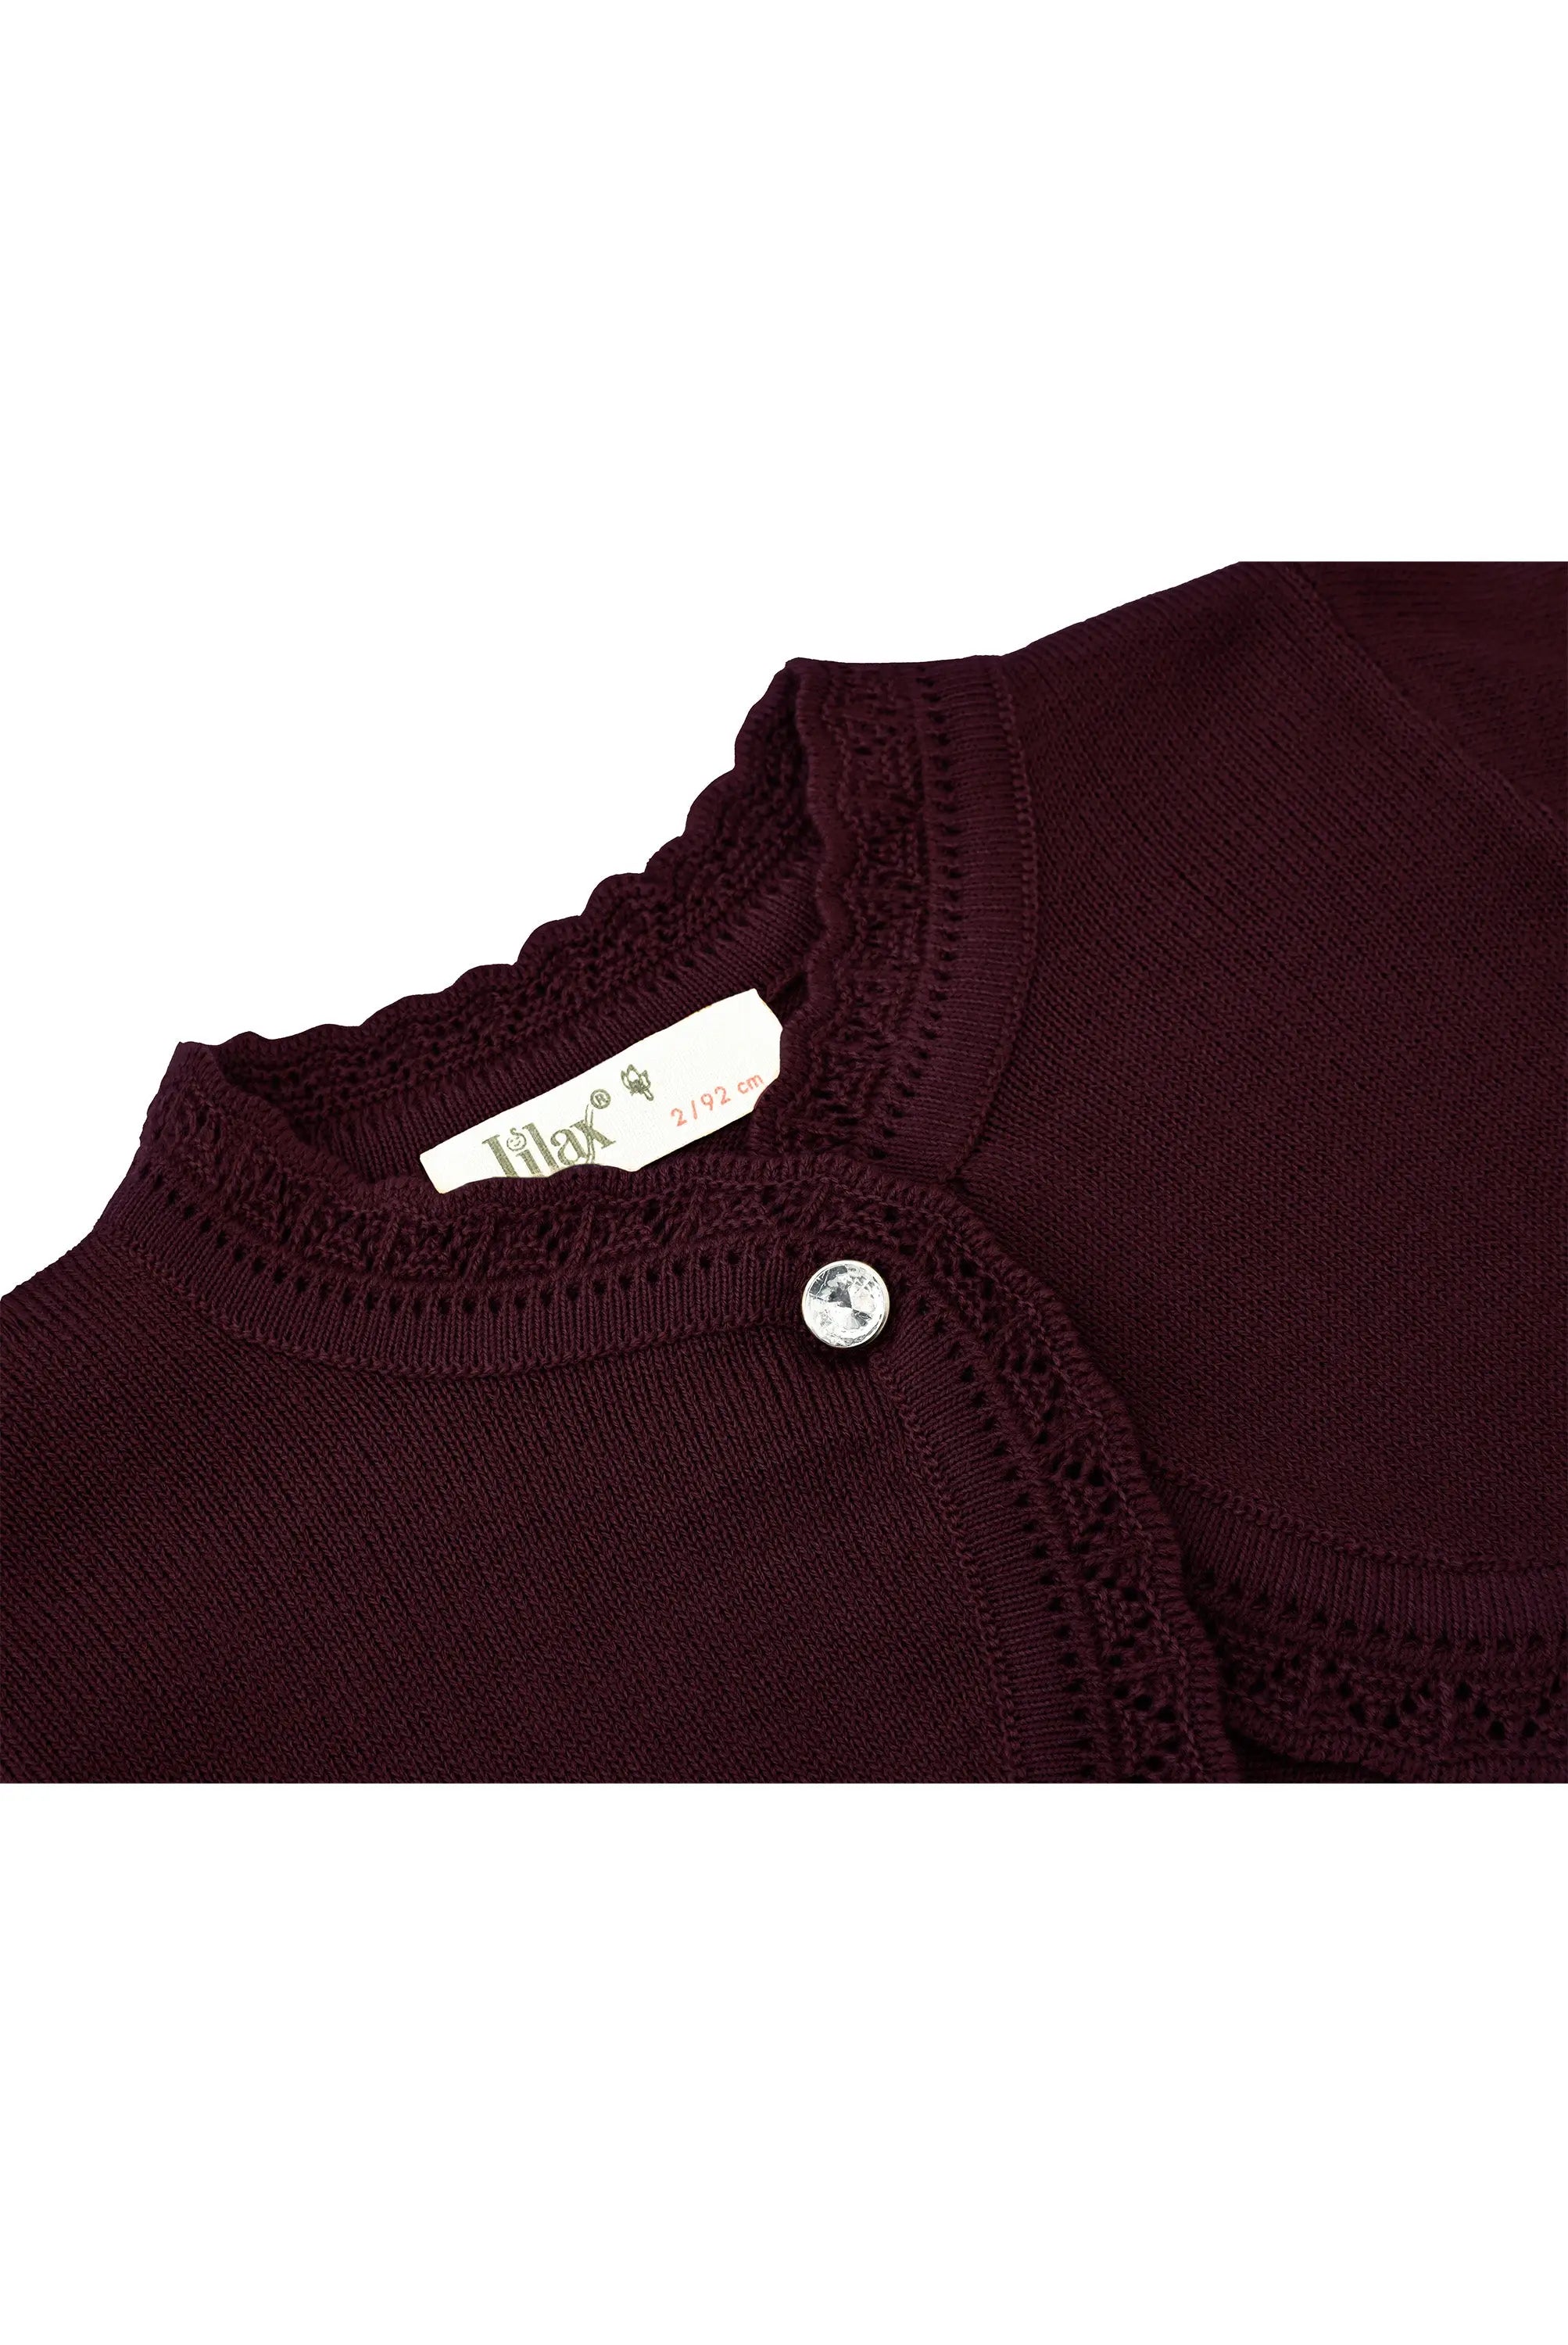 Baby Girls' Bolero Shrug Knit Long Sleeve Button Closure Cardigan LILAX